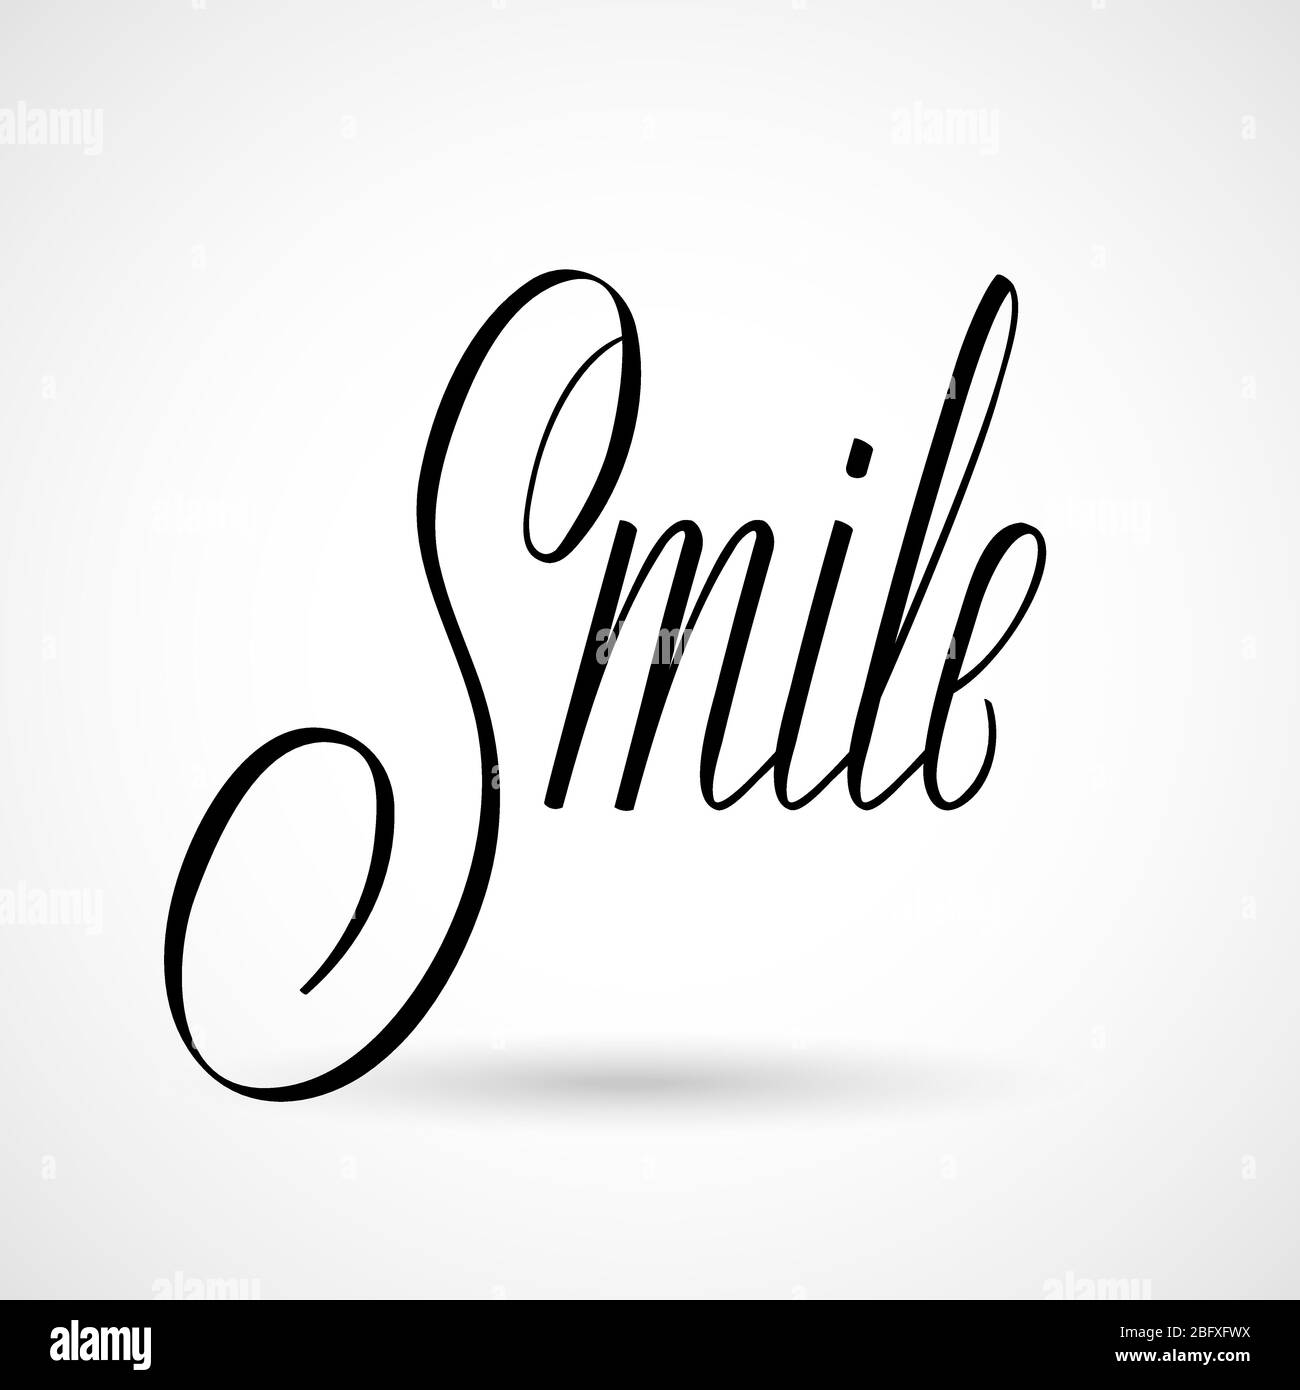 Smile Vektor-Inschrift. Handgezeichnete Kalligraphie-Phrase. Alles gute für inspirierende Worte. Illustration der Phrase Smile Wort Typografie Stock Vektor